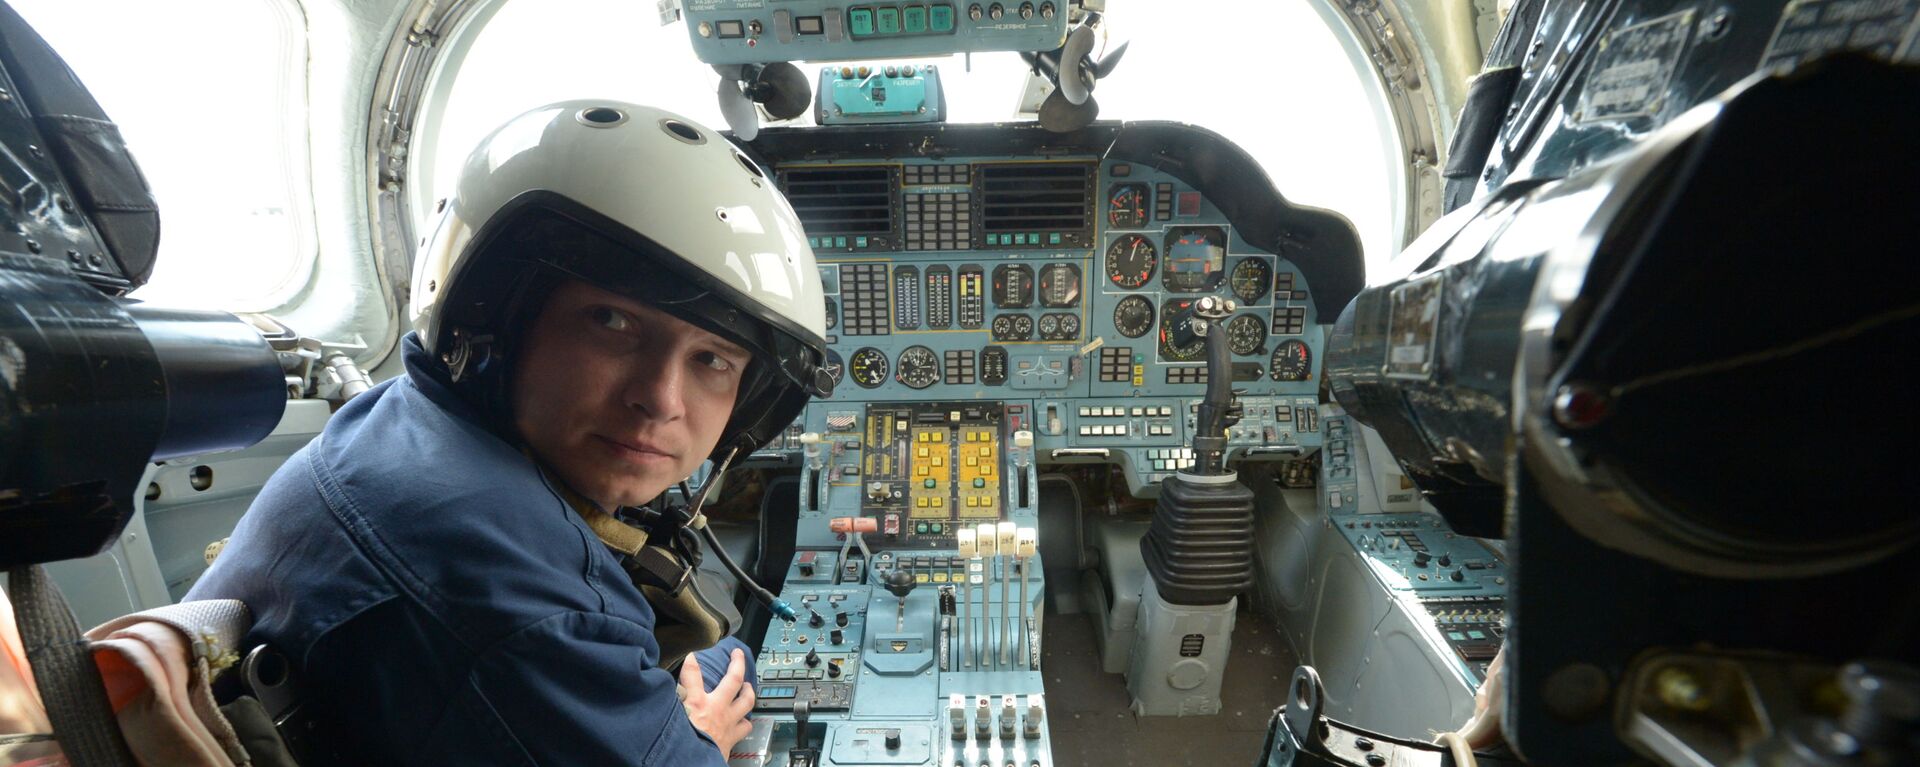 Командир стратегического бомбардировщика Ту-160 в кабине самолета - Sputnik Латвия, 1920, 26.11.2019